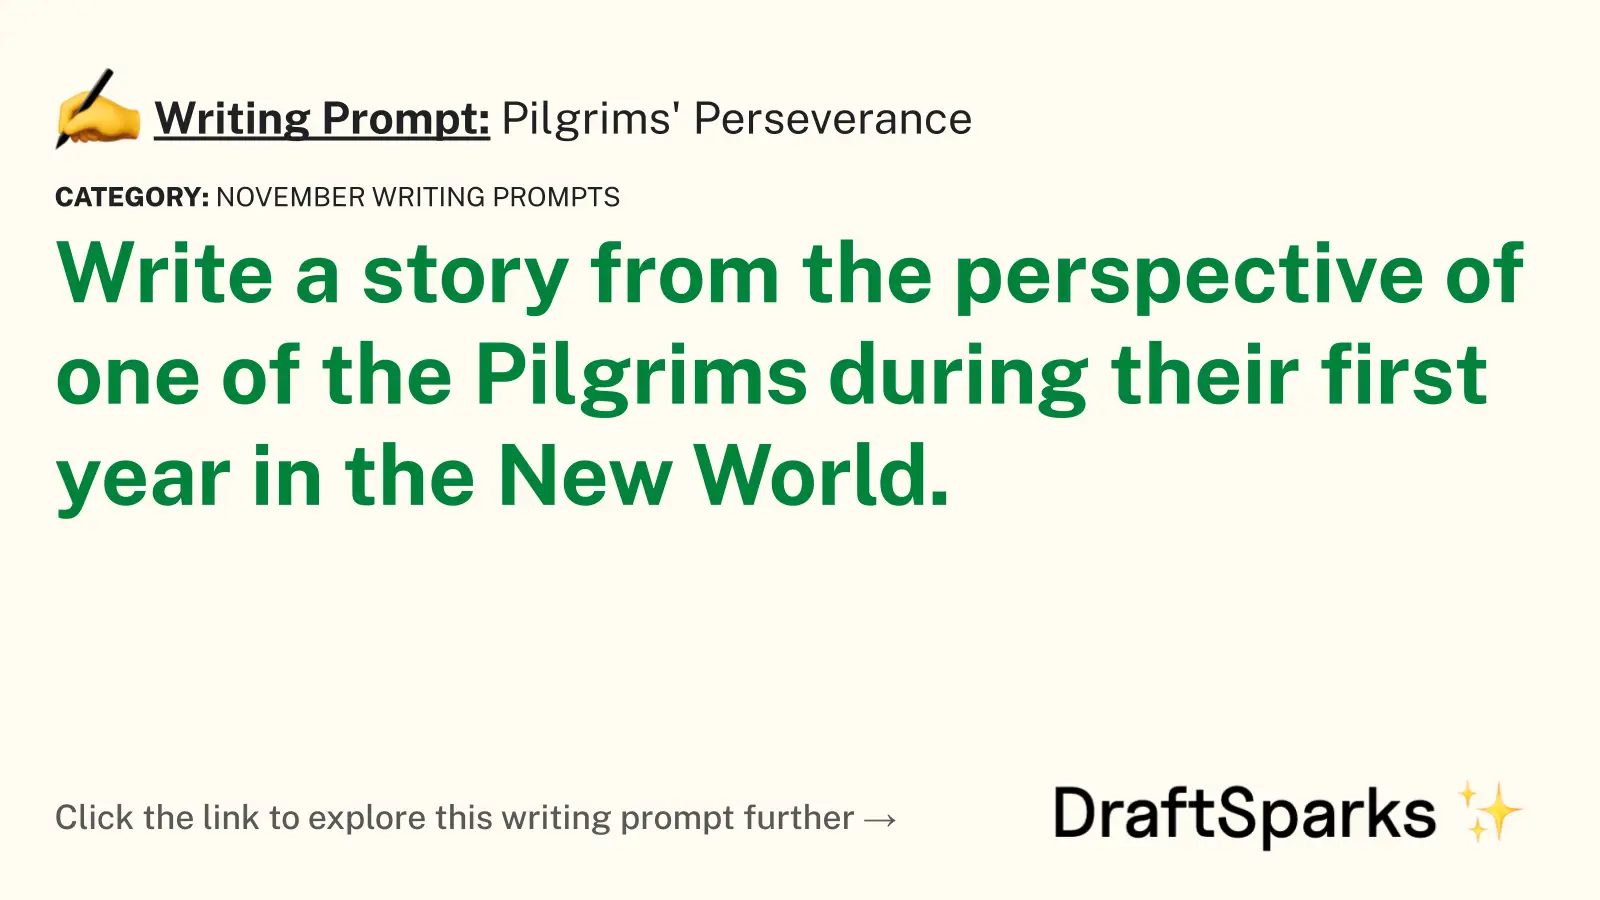 Pilgrims’ Perseverance